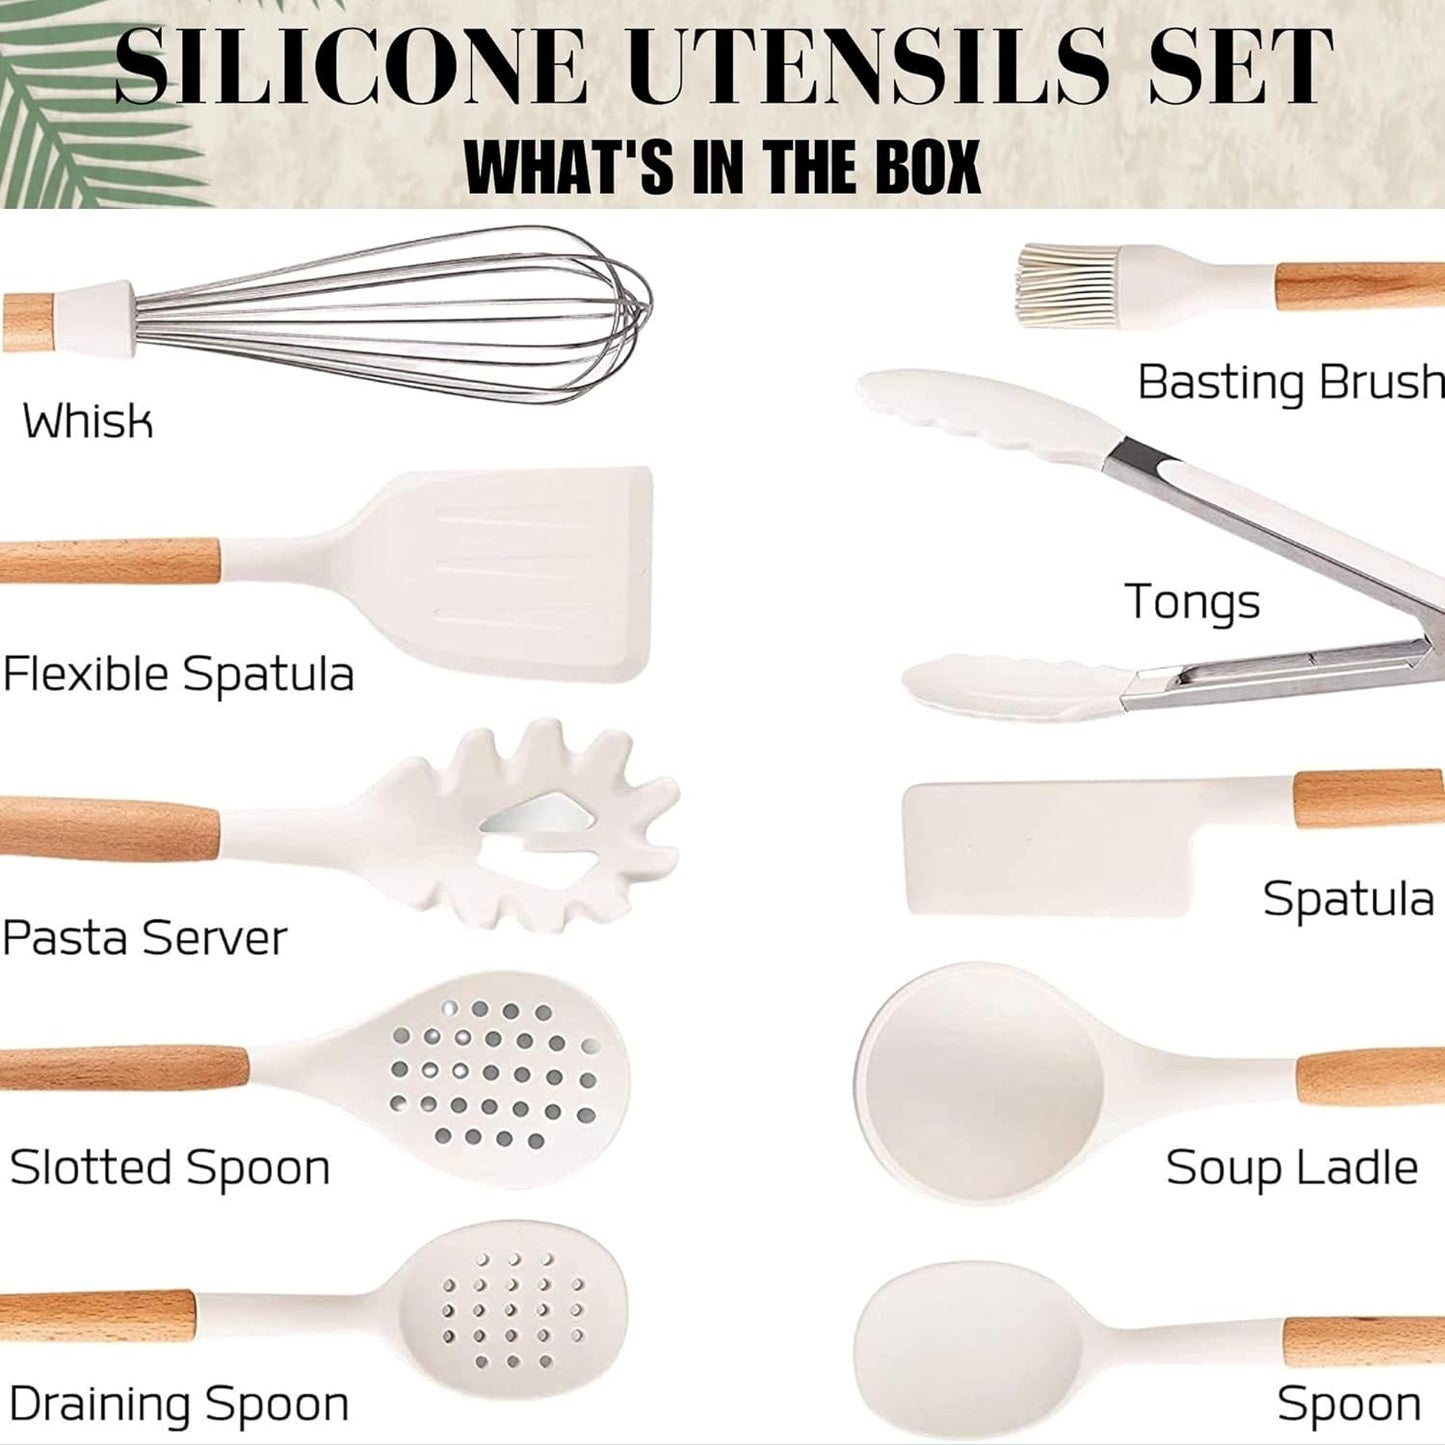 Silicone Kitchen Utensils Set, Heat-Resistant Silicone Utensils for Cooking, Silicone Cooking Utensils, White Utensils Set, Silicone Utensil Set, Silicone Whisk, Cooking Utensils Set (2) - Gr